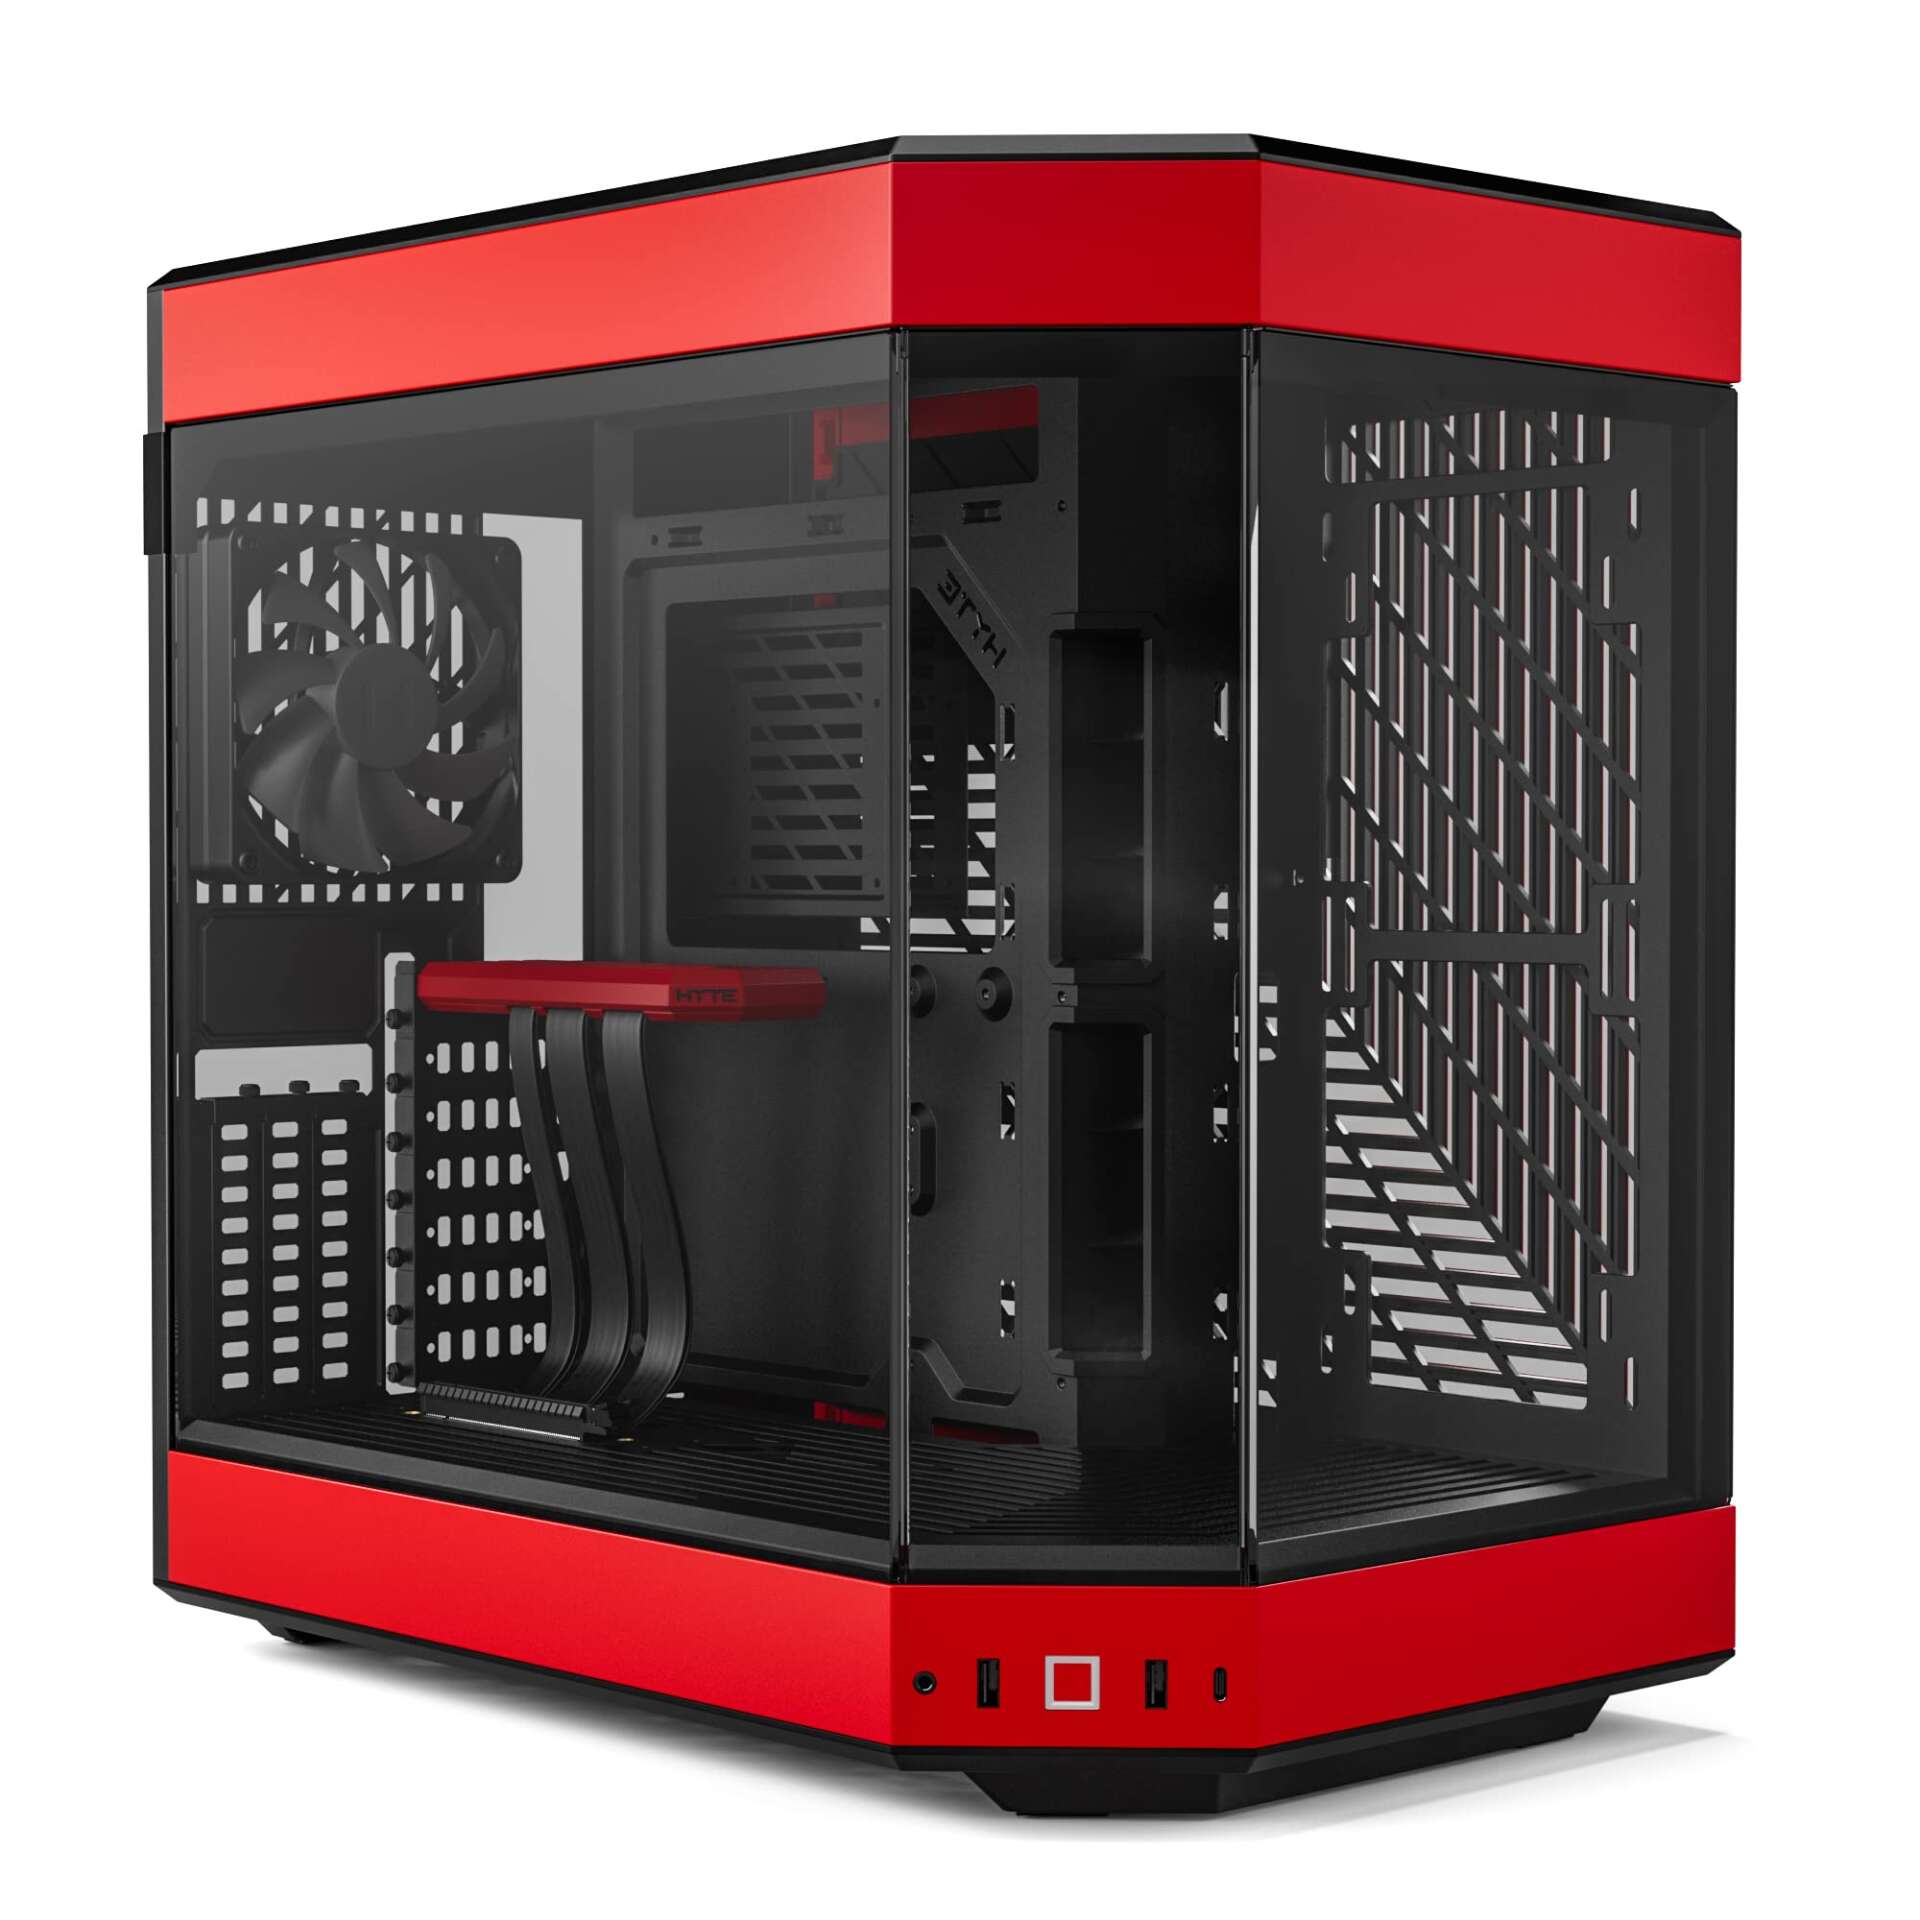 Hyte y60 számítógépház - piros/fekete (csomagolás nélküli!)